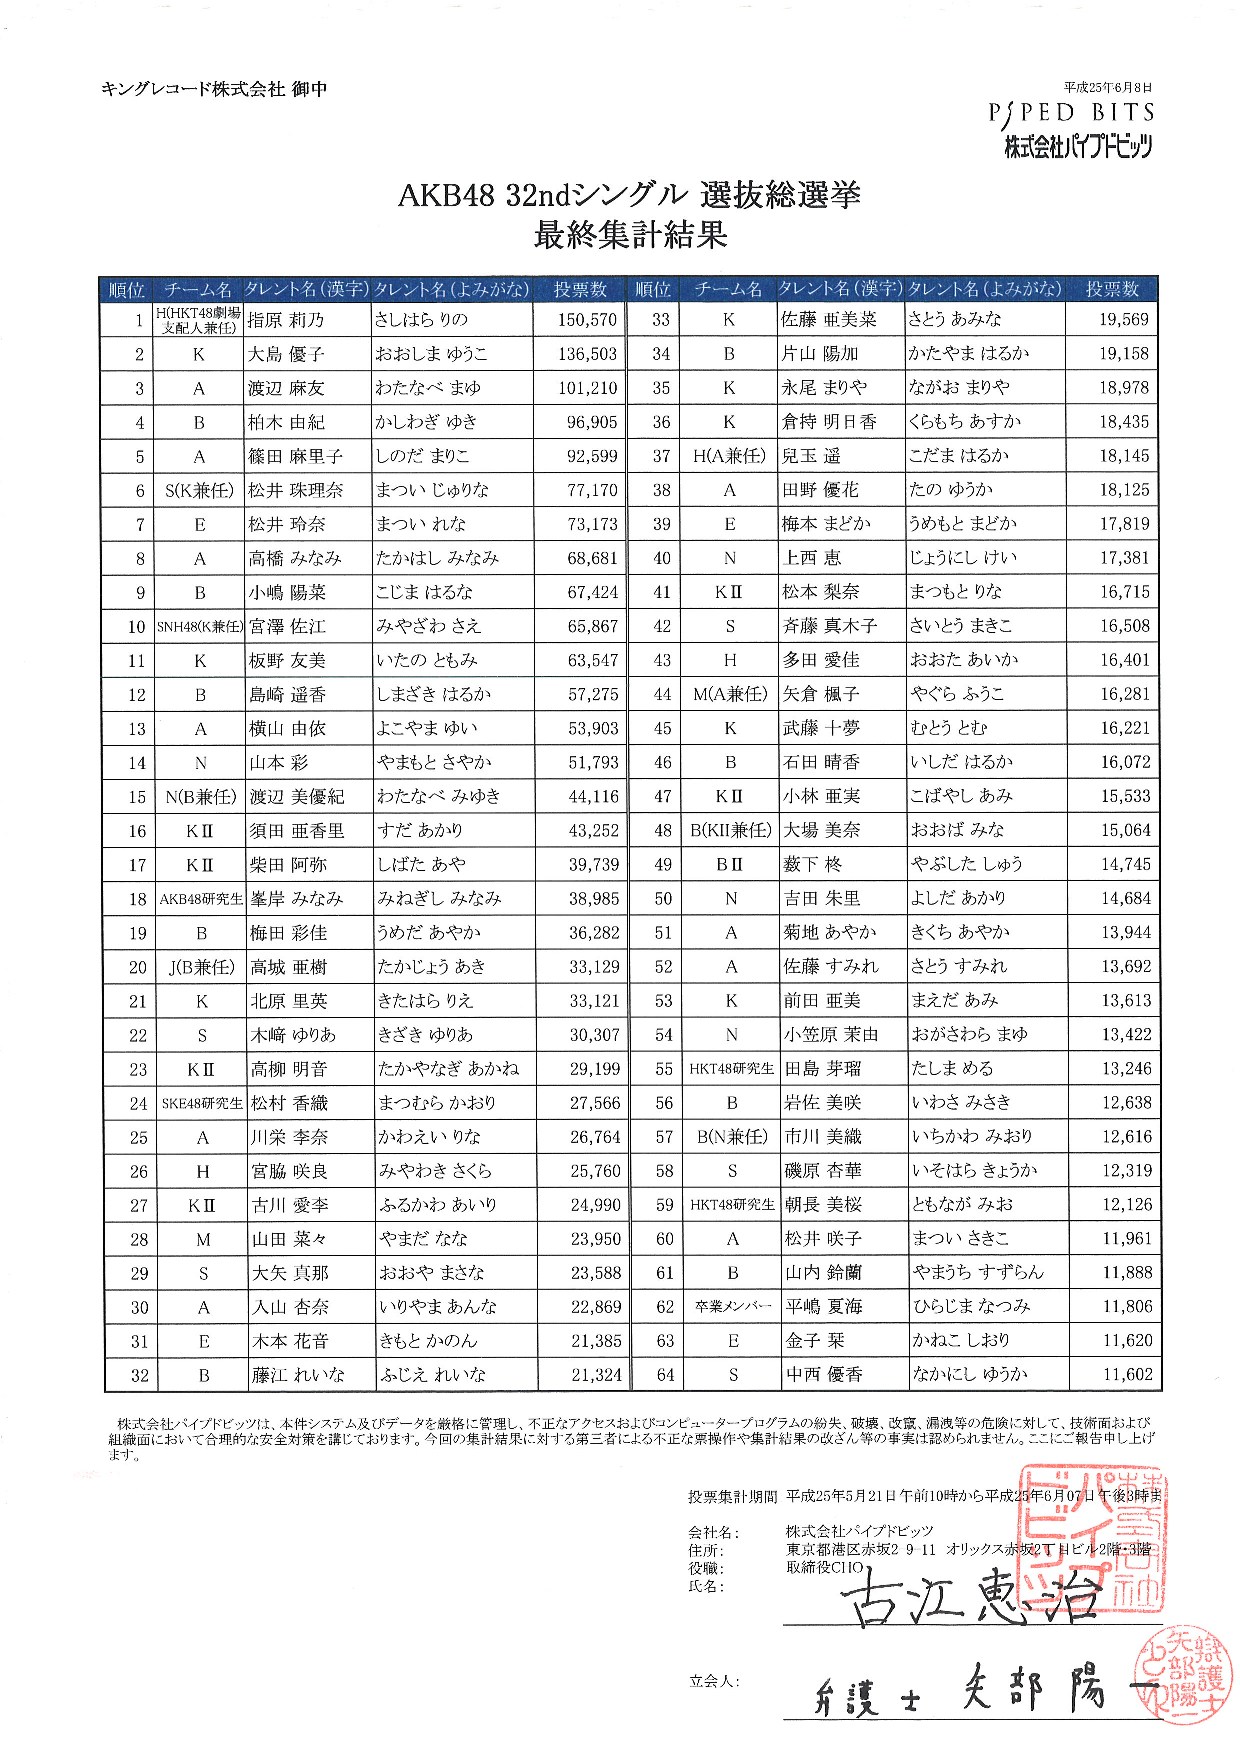 Akb48公式サイト Akb48 32ndシングル 選抜総選挙 投票結果